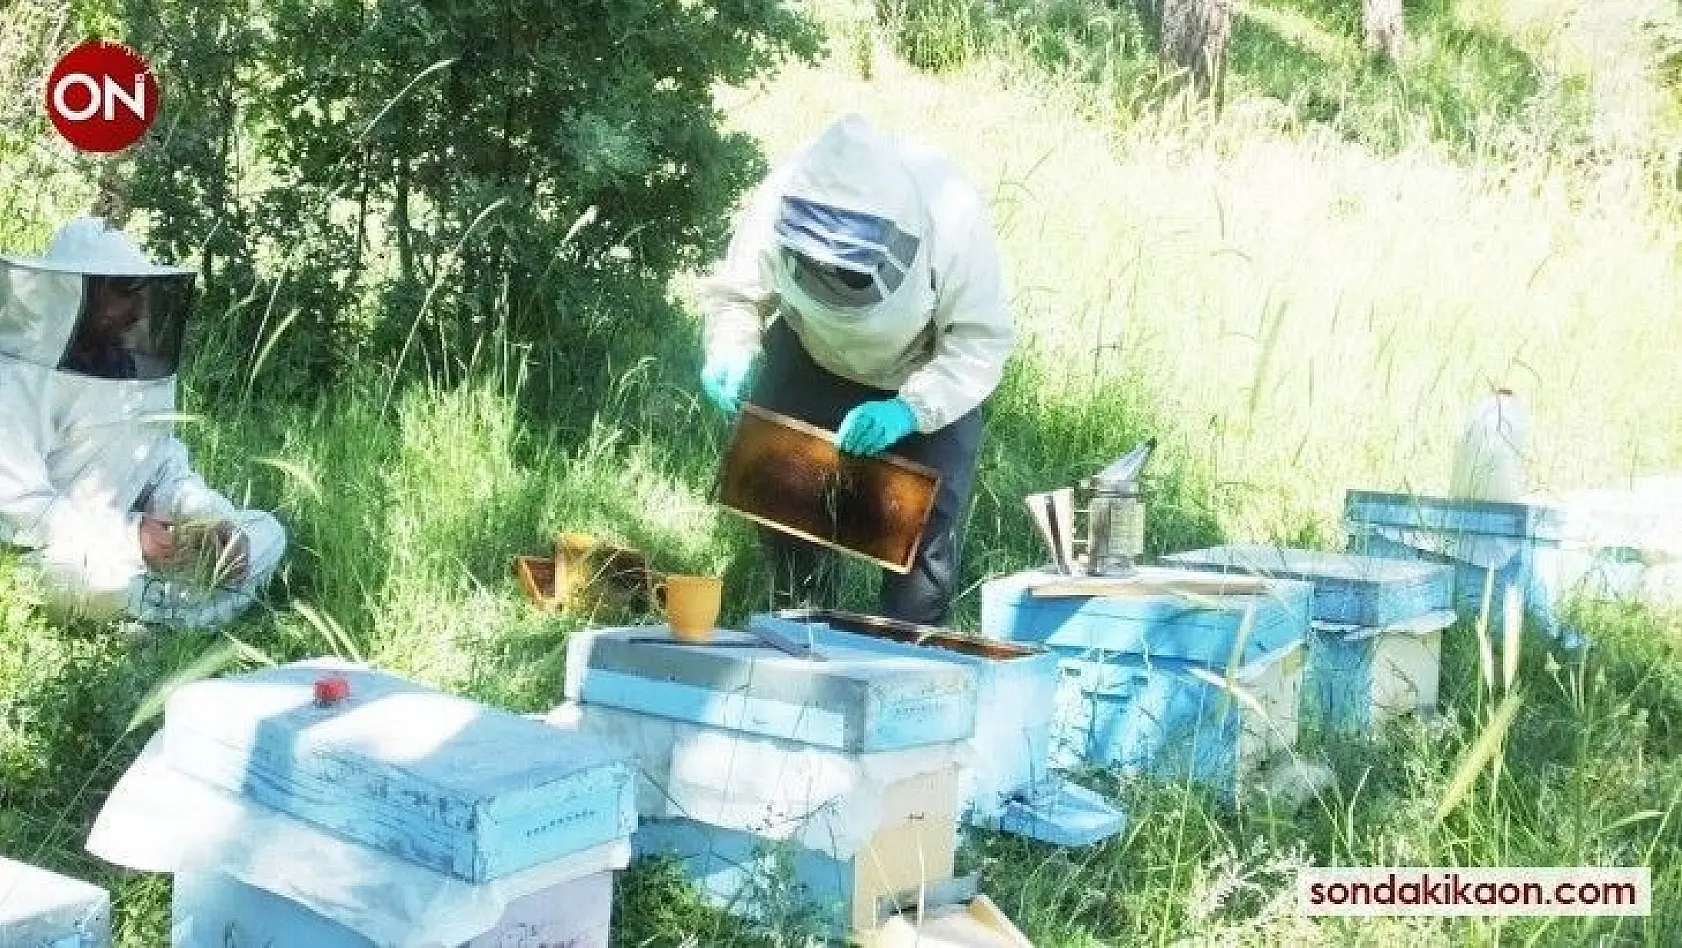 Balıkesir'de balın iyi para etmesi arılara olan itibarı artırdı